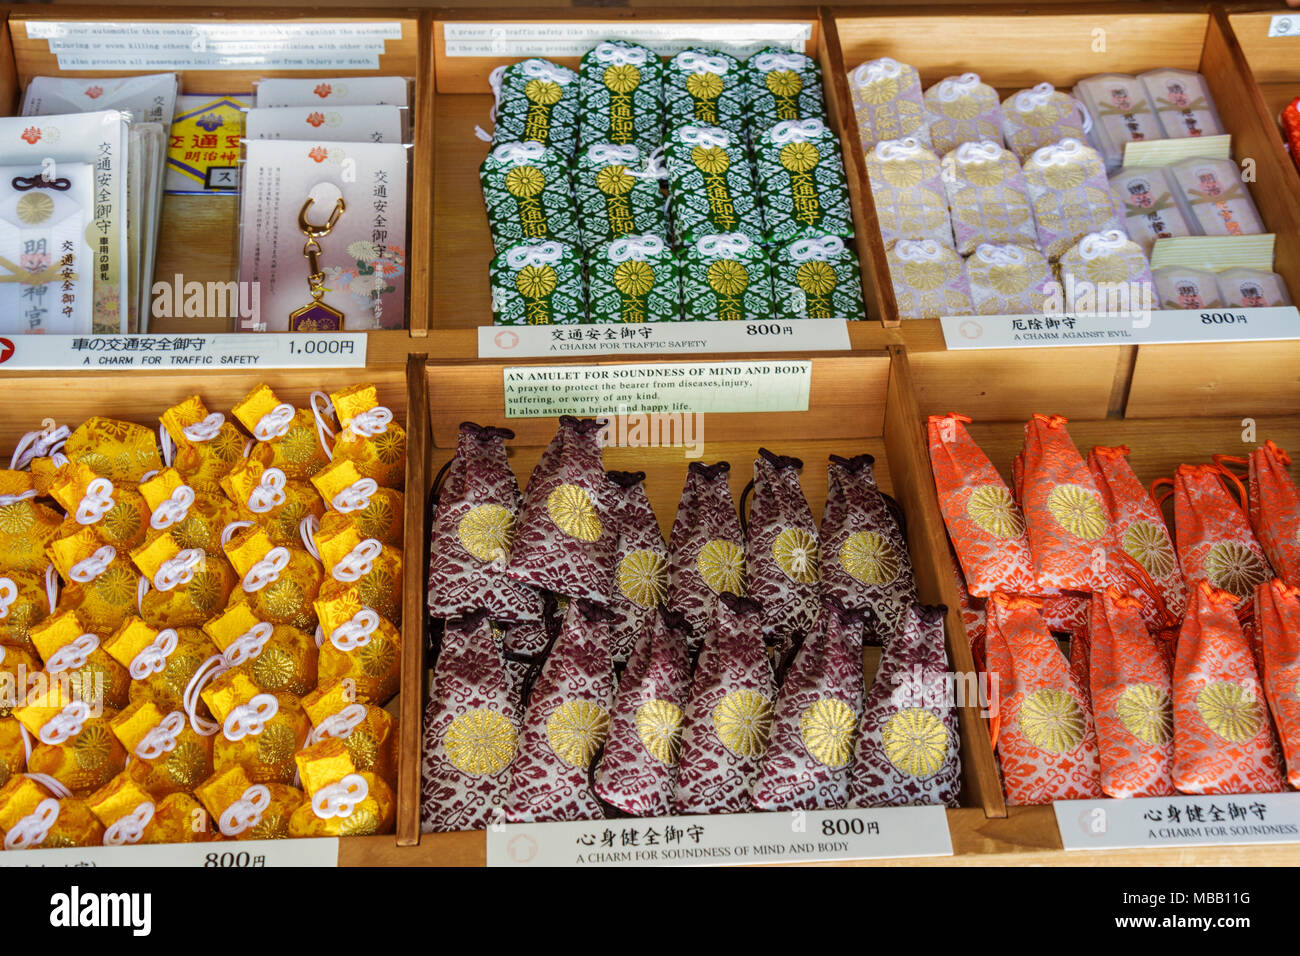 Tokyo Japon,Shibuya ku,Meiji Jingu Shinto Shrine,amulettes religieuses à vendre,emblèmes,kanji,hiragana,personnages,symboles,japonais & anglais,bonne chance,juy Banque D'Images